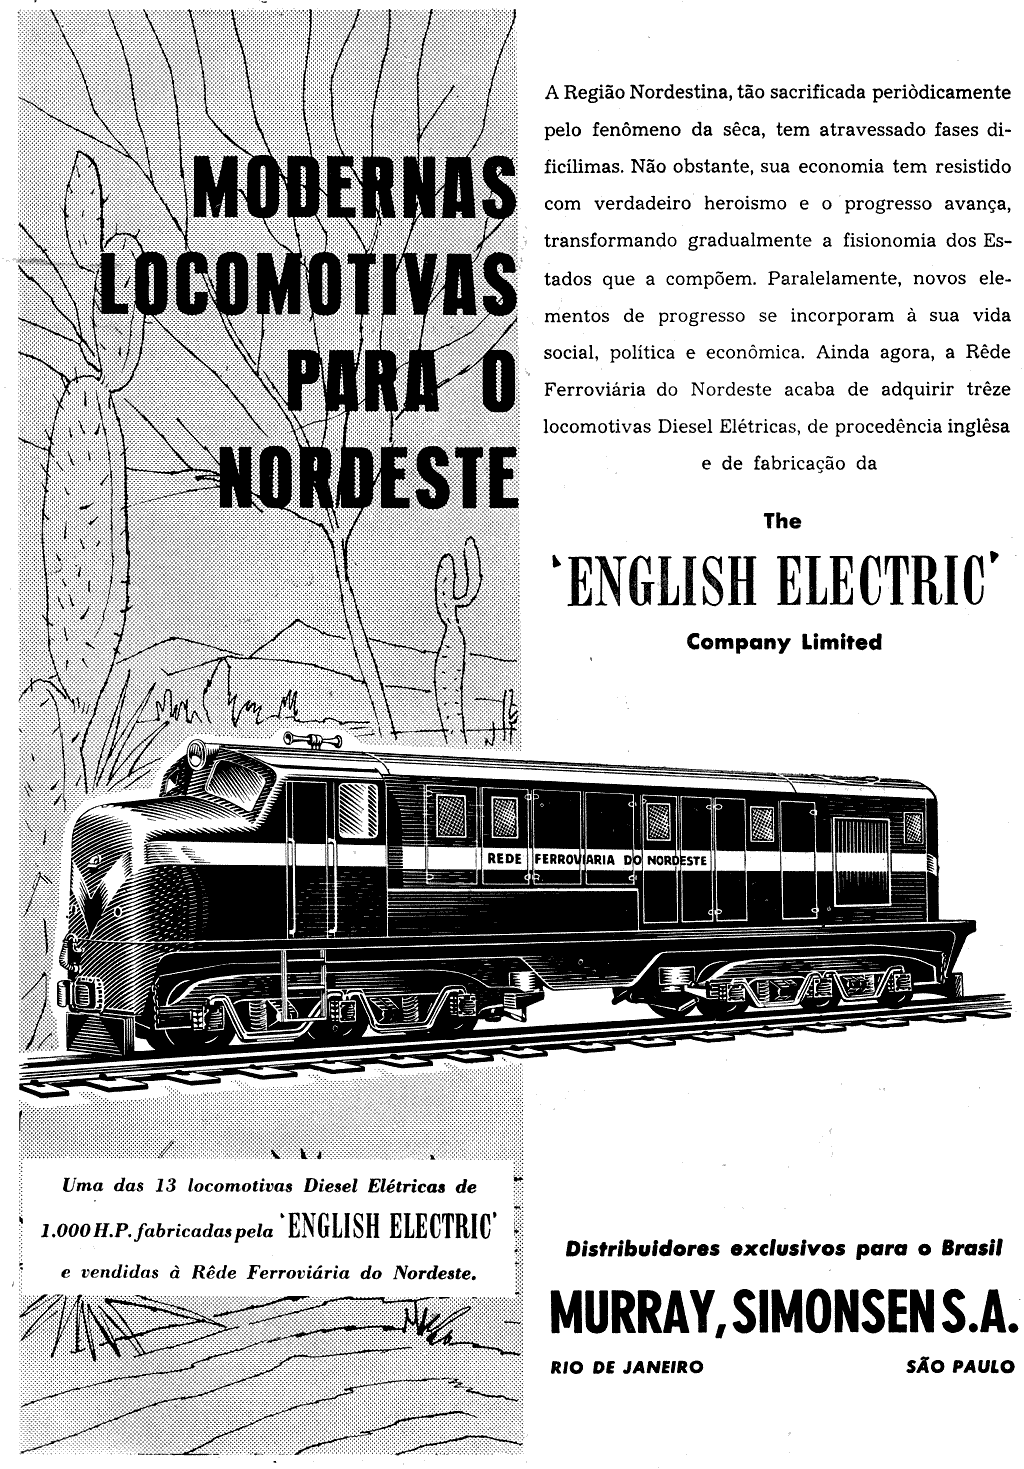 Locomotivas English Electric em anúncio de Murray, Simonsen S/A, representantes exclusivos no Brasil em 1954